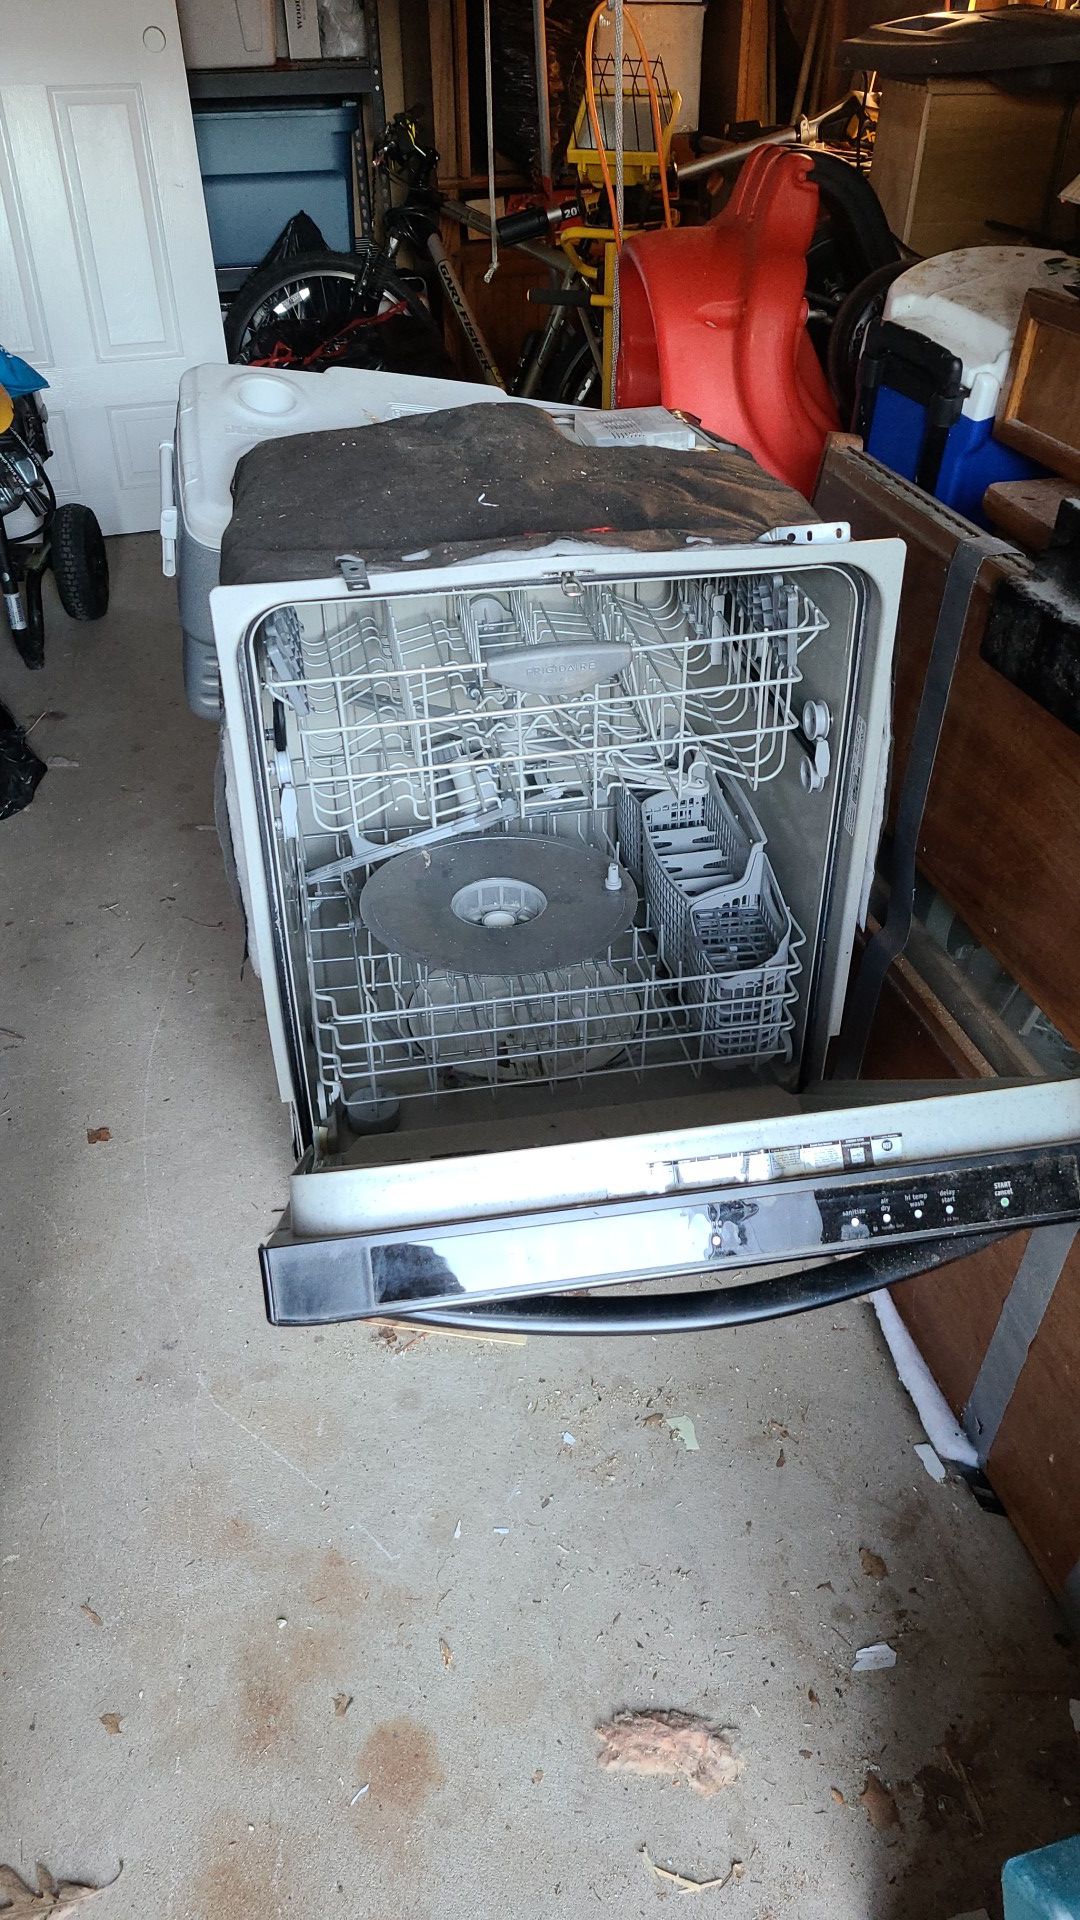 Free Frigidaire gallery dishwasher kitchen appliance